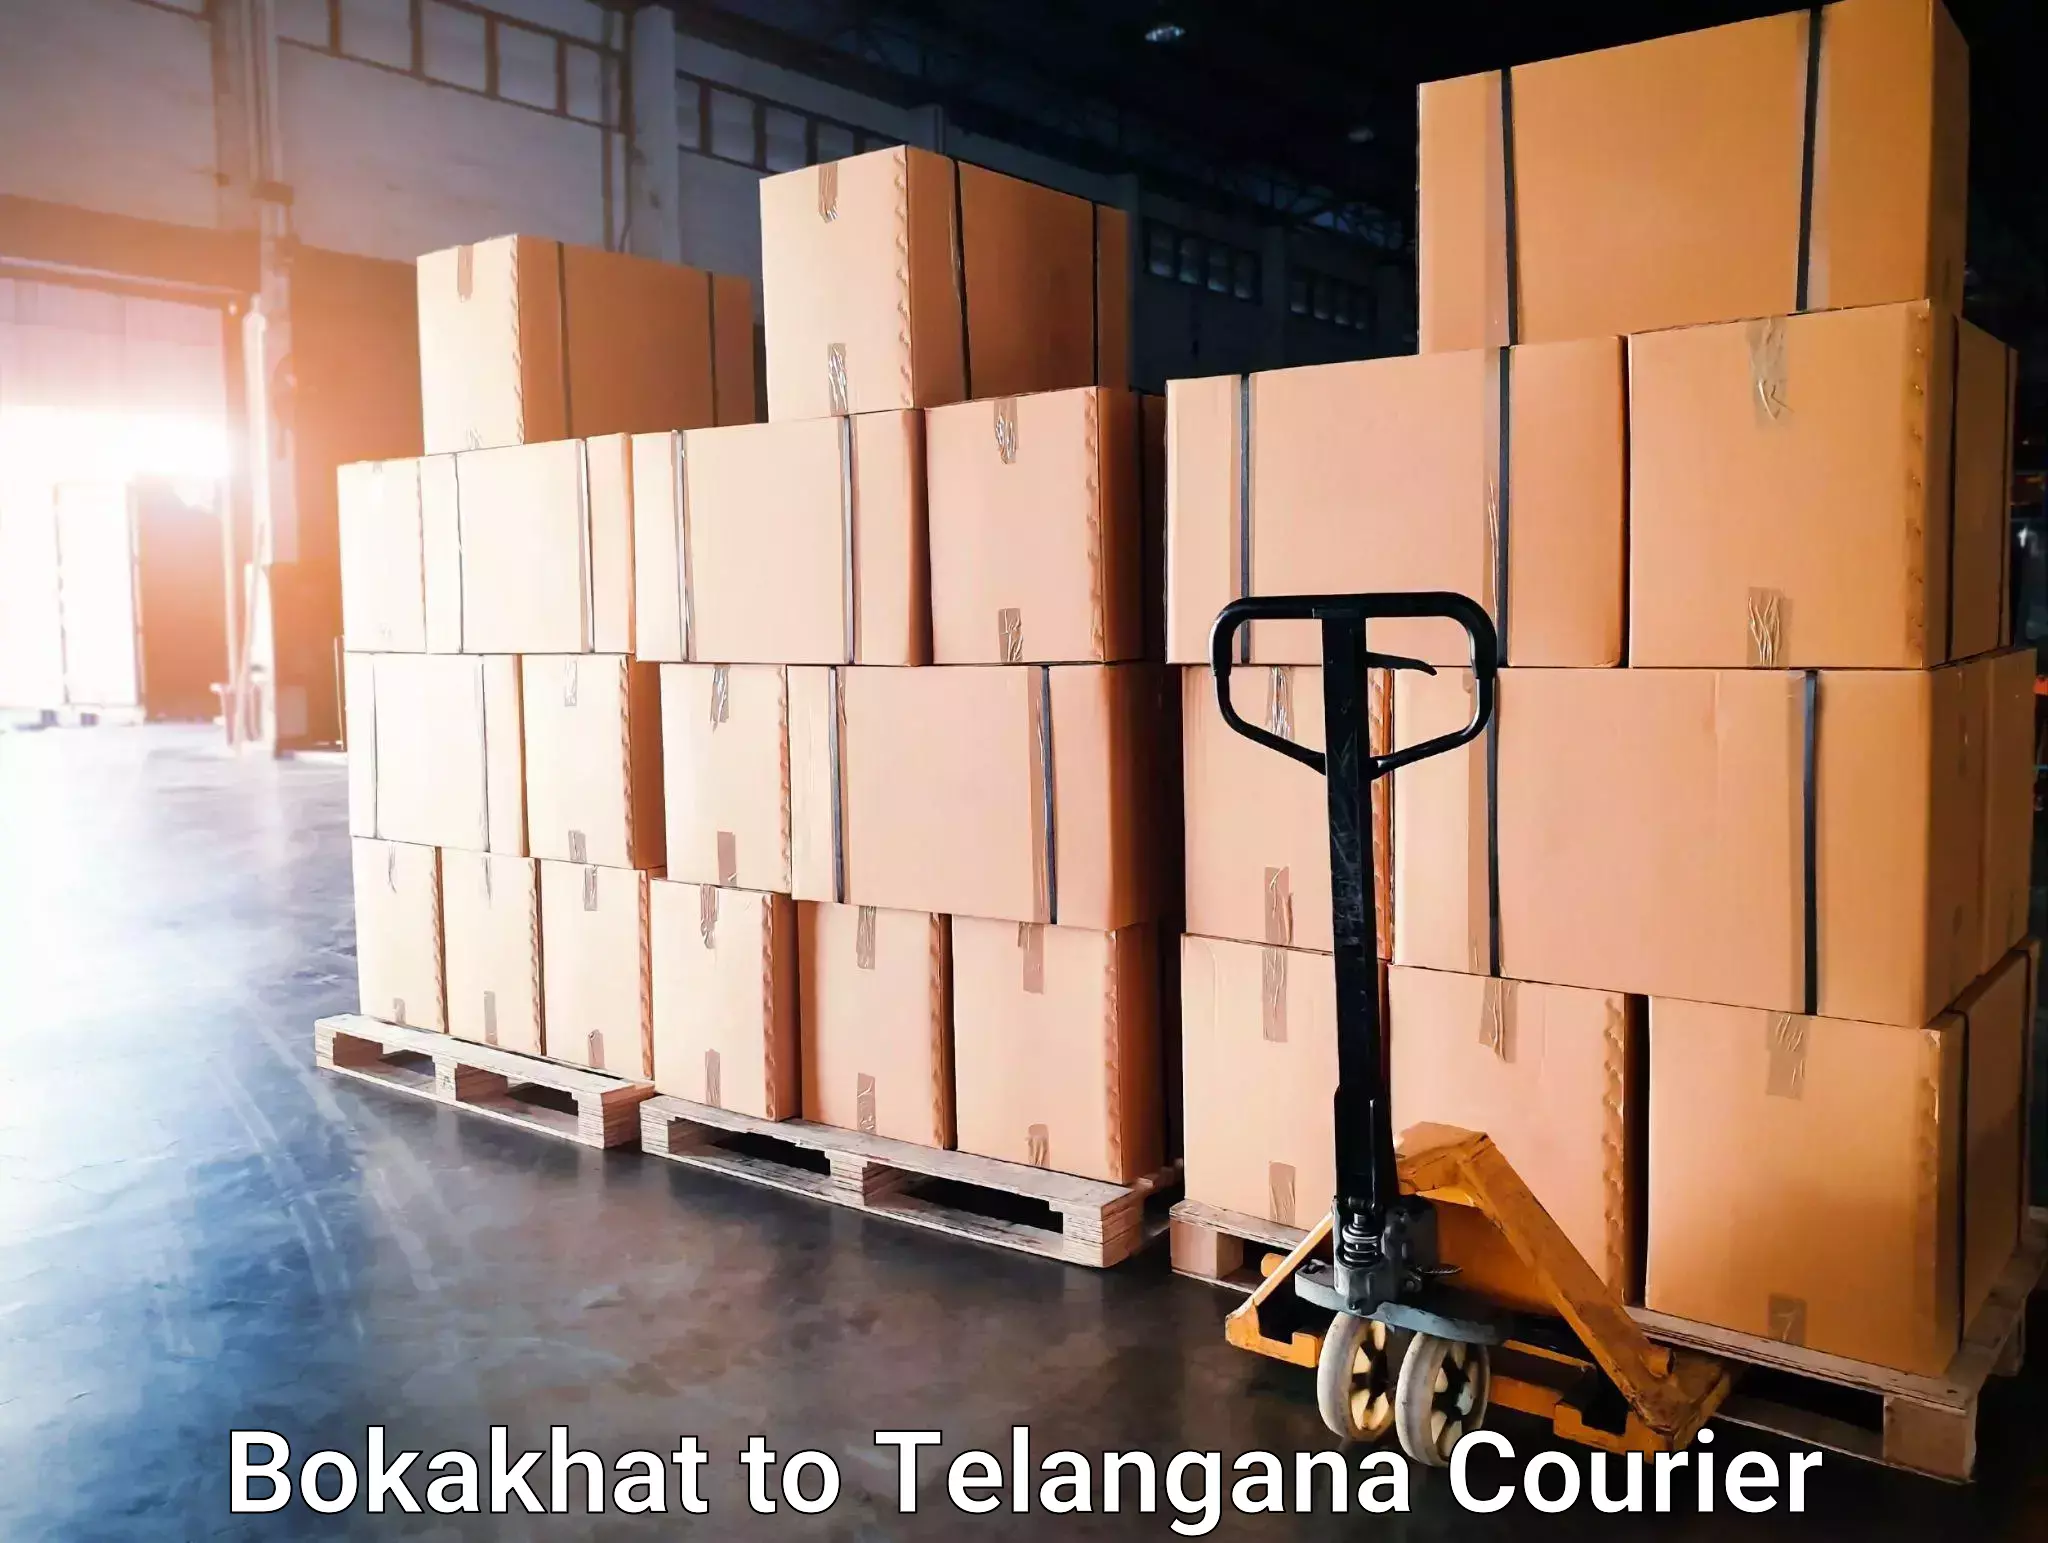 Supply chain efficiency in Bokakhat to Bhuvanagiri